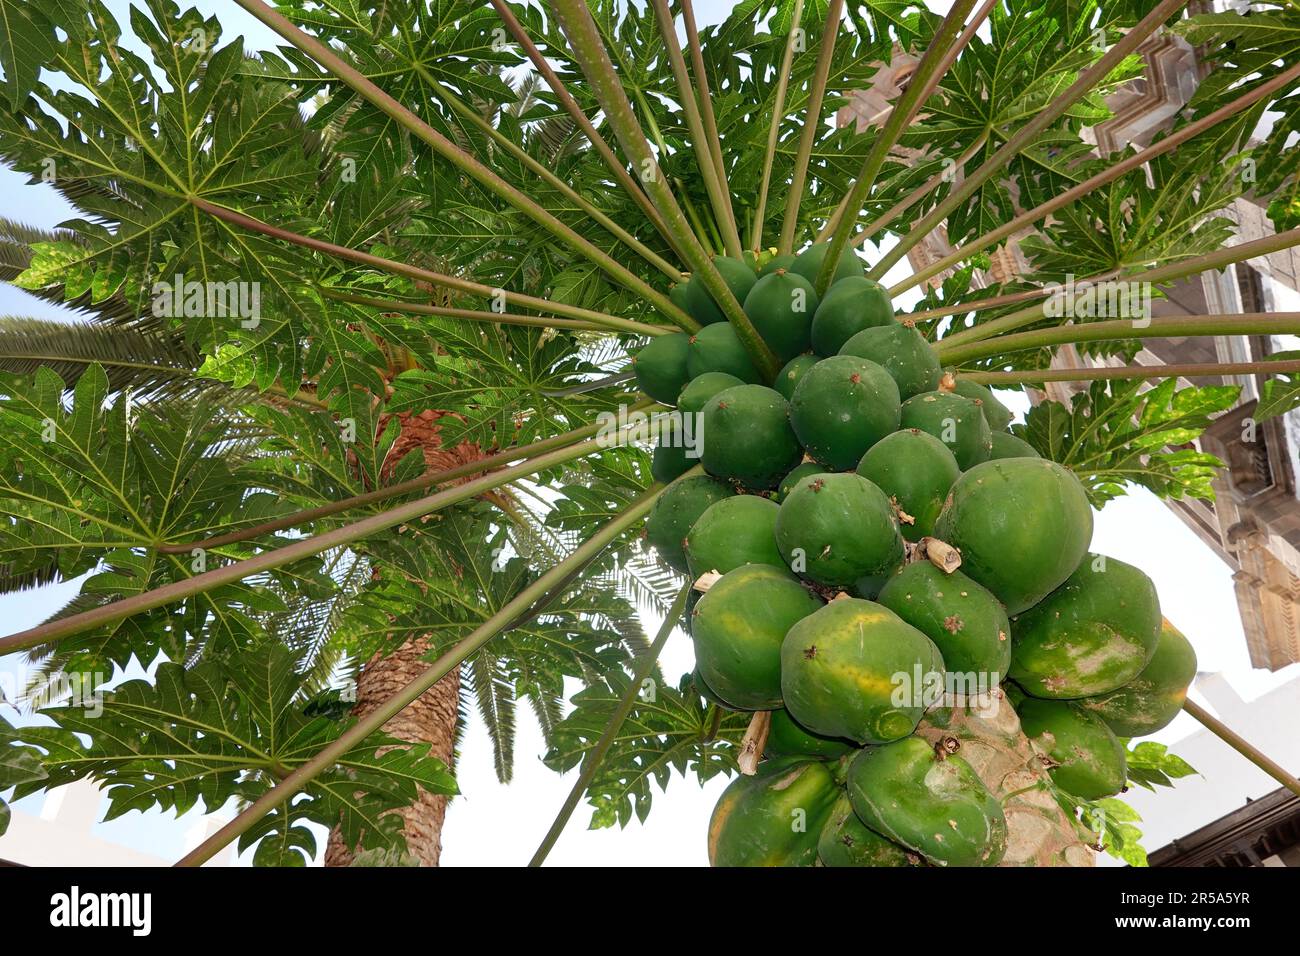 papaya, papaw, paw paw, mamao, tree melon (Carica papaya), papayas on a tree, Canary Islands, Gran Canaria, Las Palmas Stock Photo